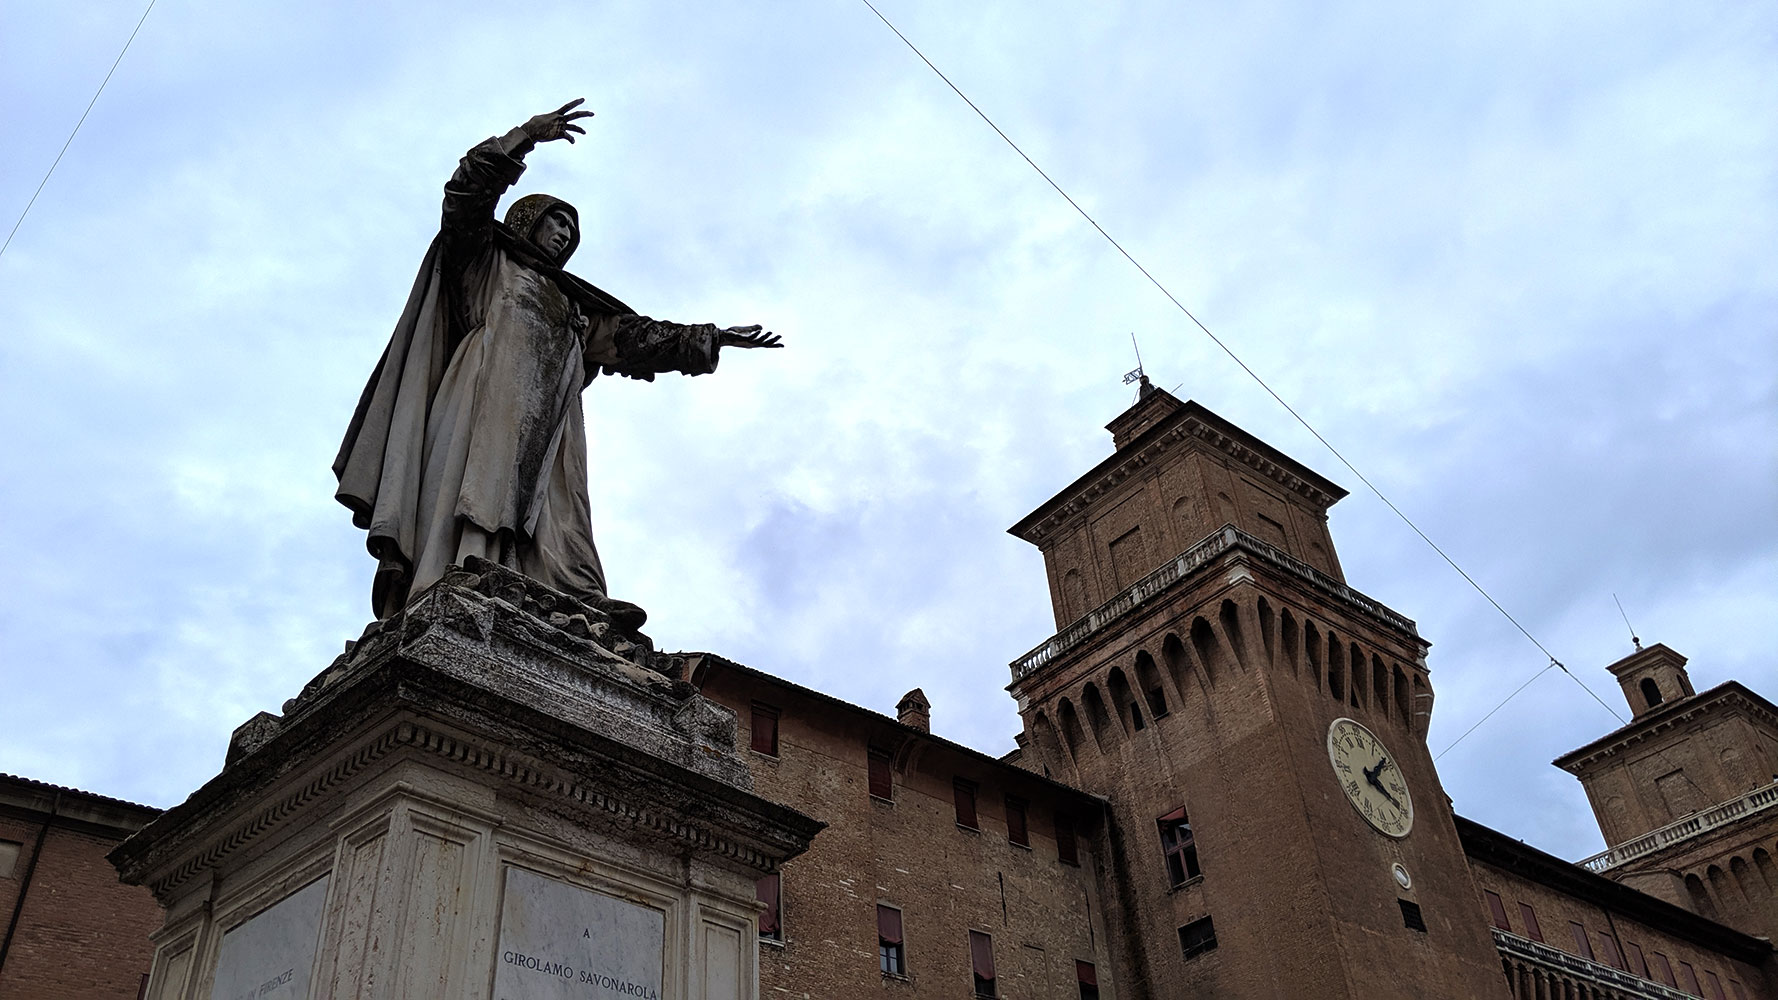 Piazza Savonarola